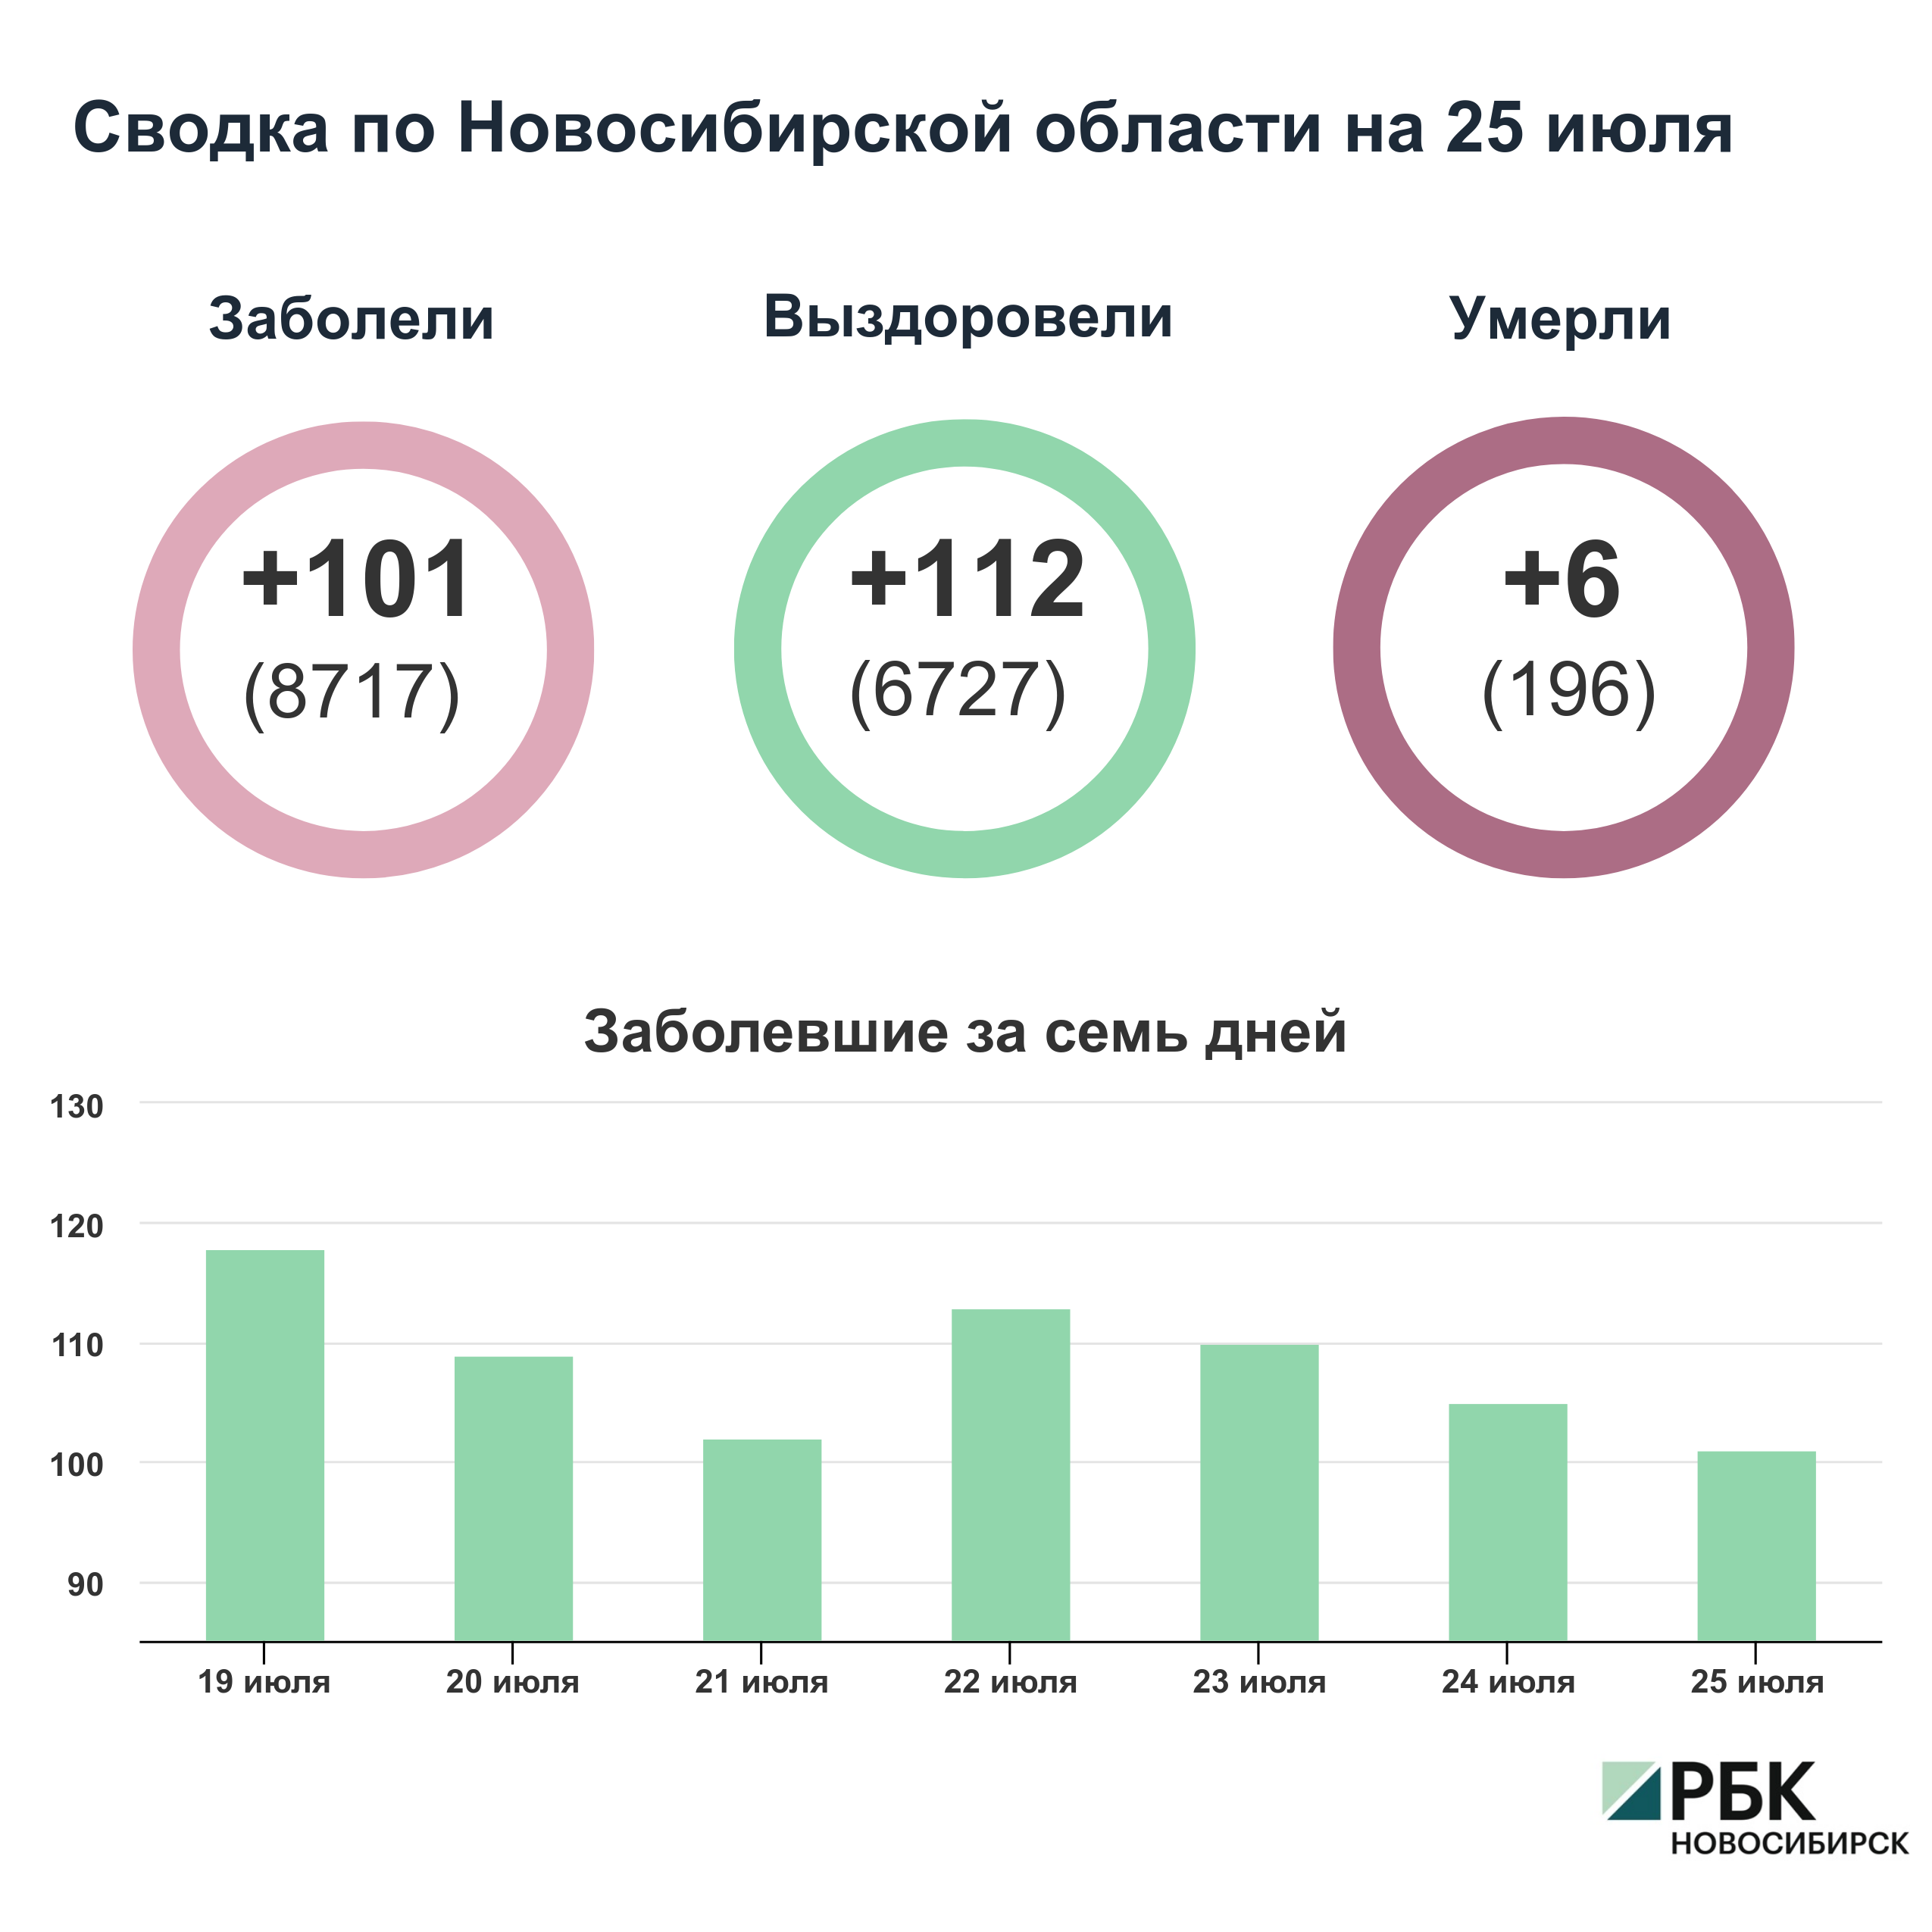 Коронавирус в Новосибирске: сводка на 25 июля